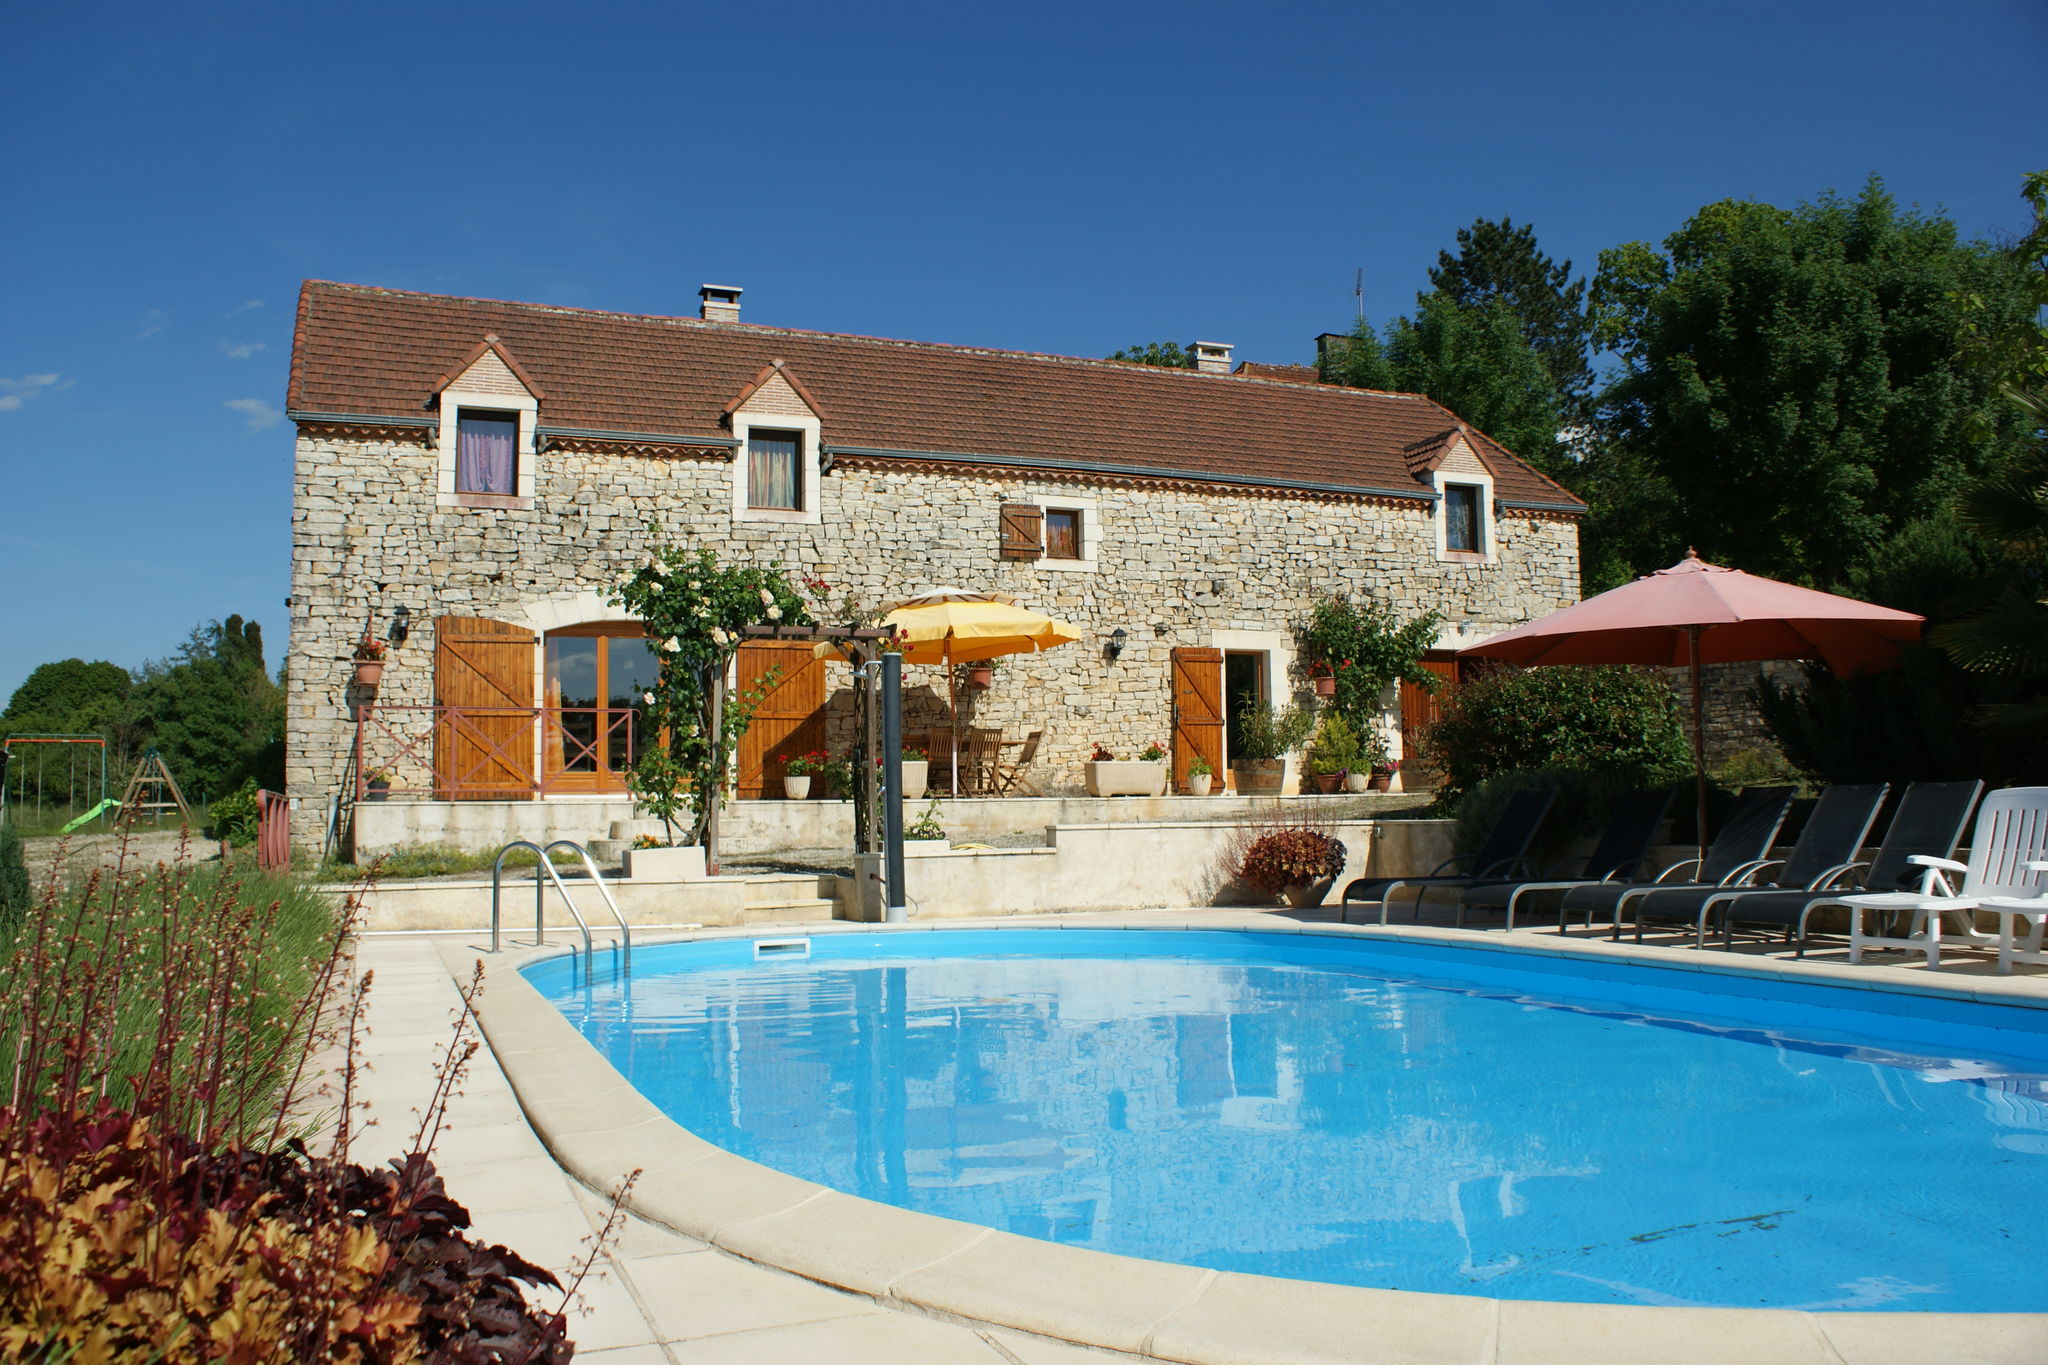 Kindvriendelijk vakantiehuis met zwembad in Thédirac.